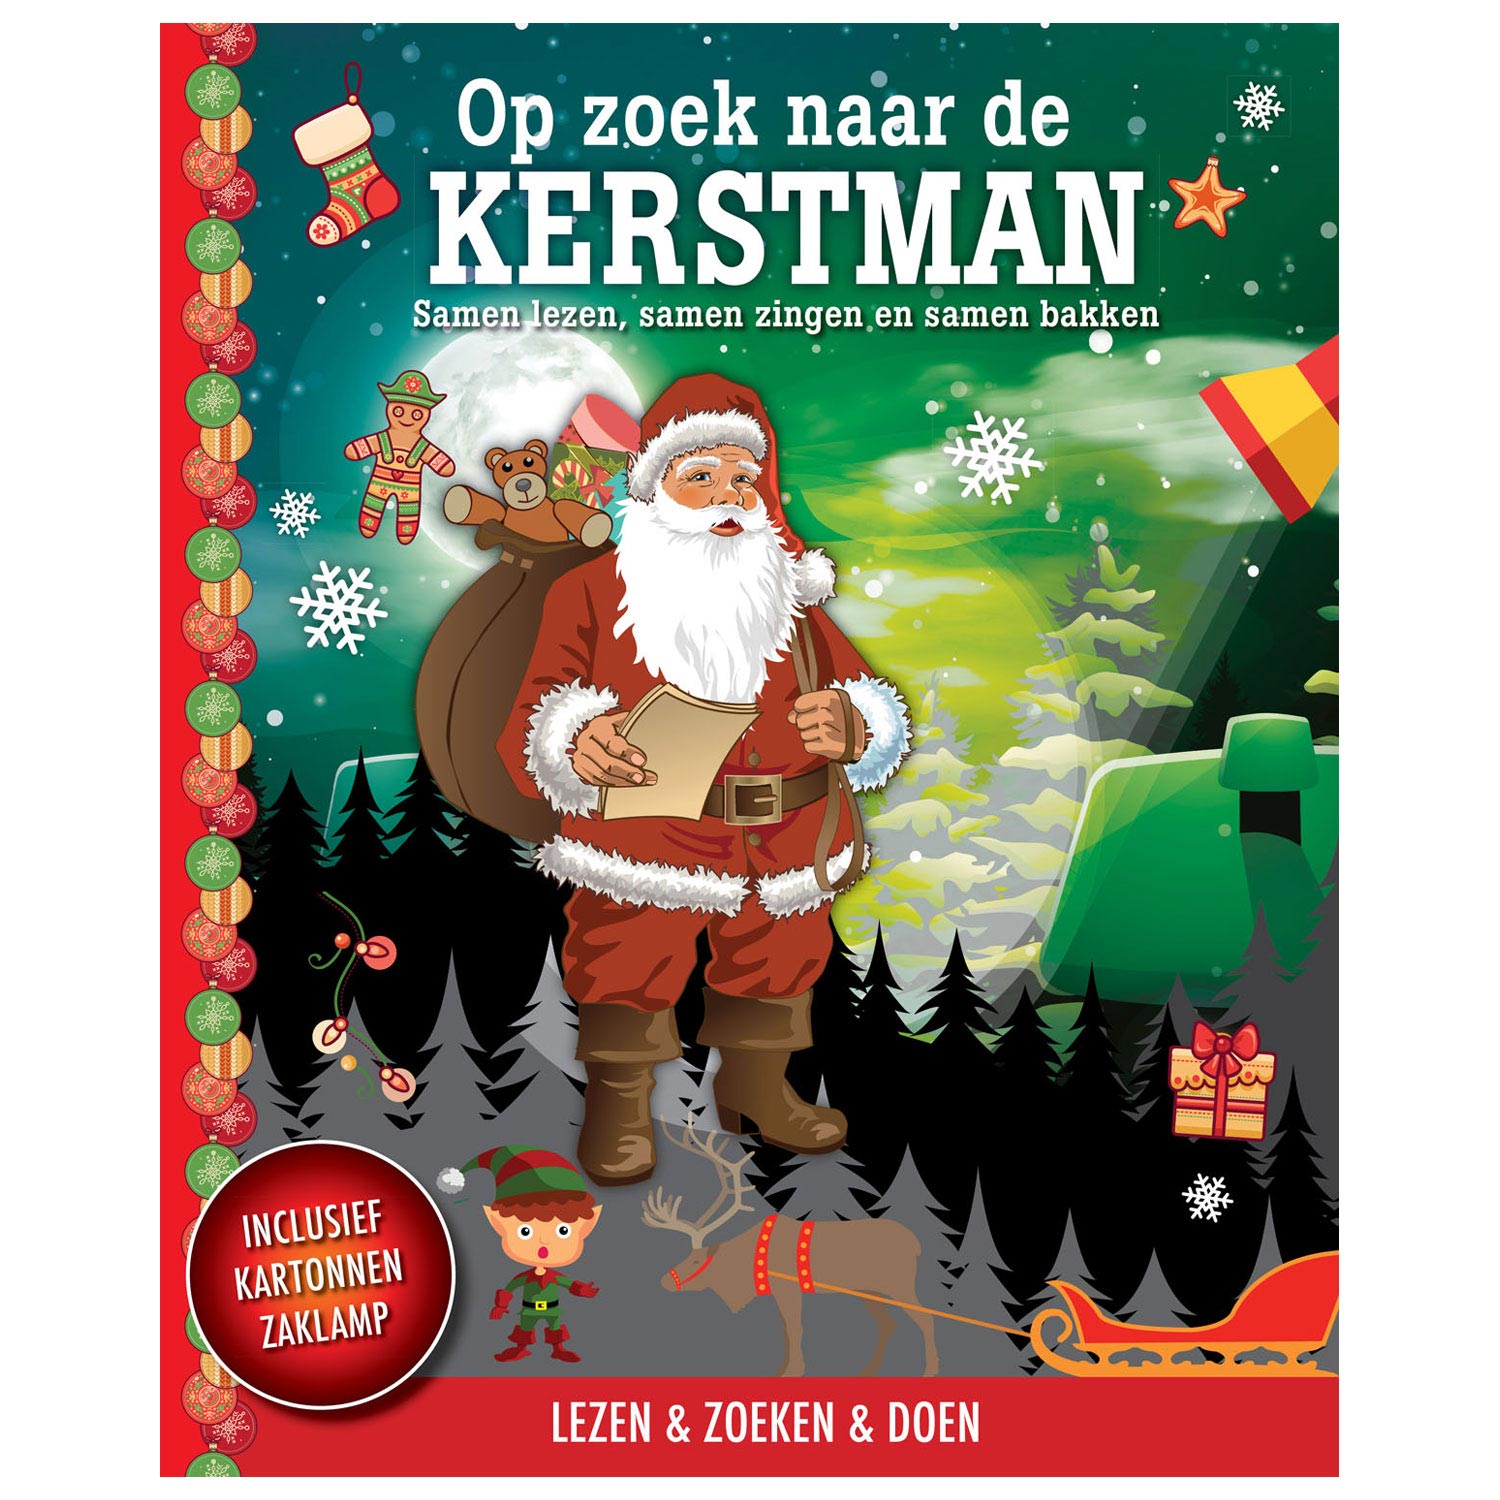 Op zoek naar de Kerstman + kartonnen zaklamp